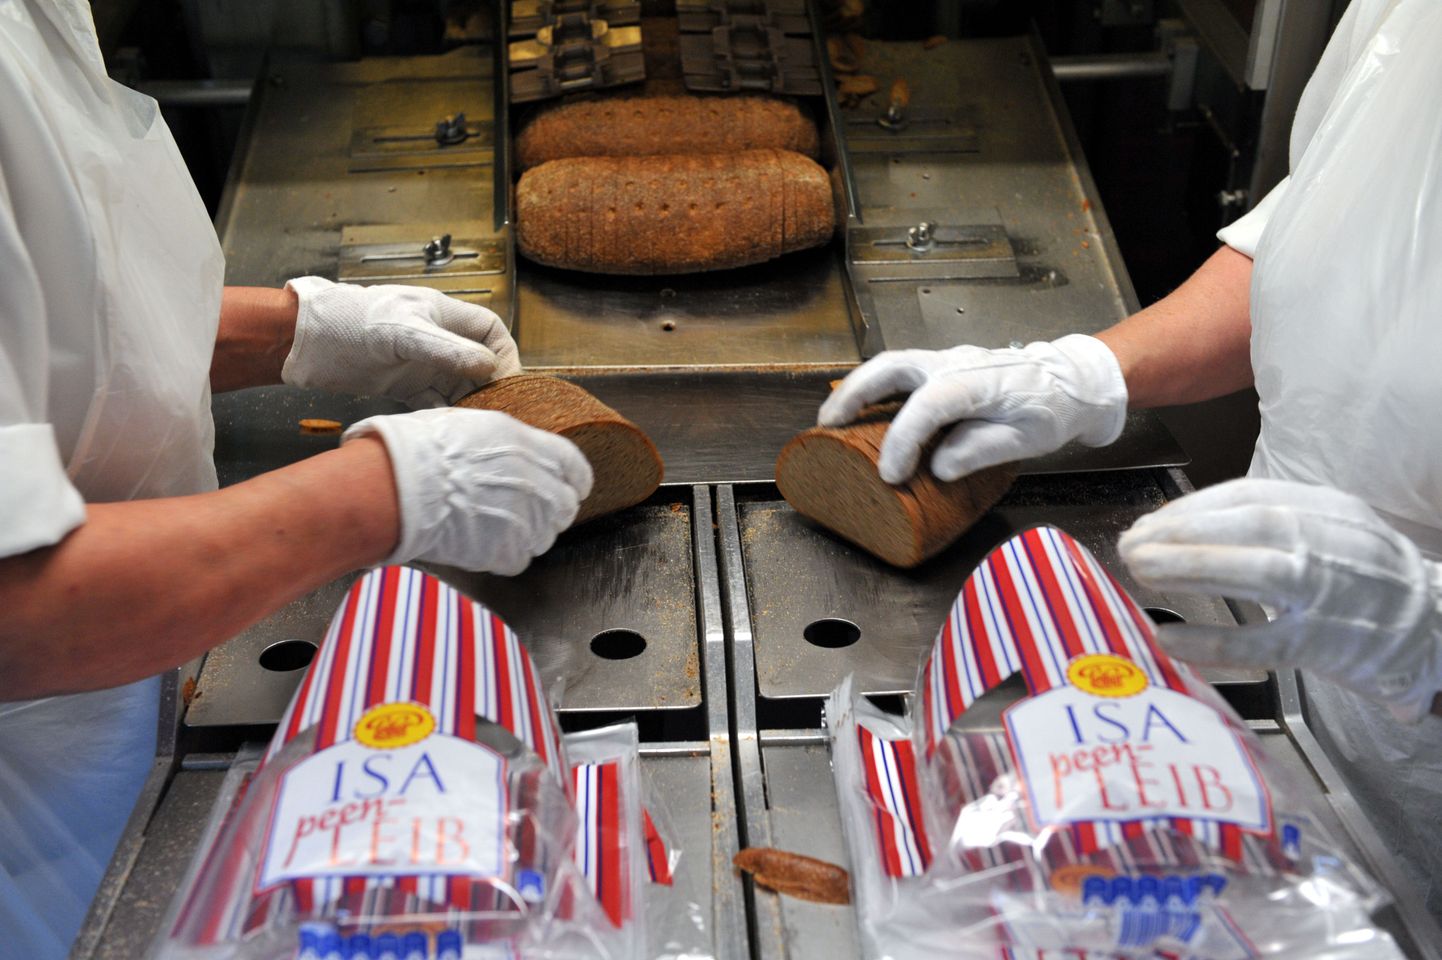 Leiburi kvaliteedijuhi kinnitusel ei saa nad endale apsakaid lubada, sest koos leivaga müüakse tarbijaile ka usaldust. Pildil leibade pakkimine Leiburi tehases.